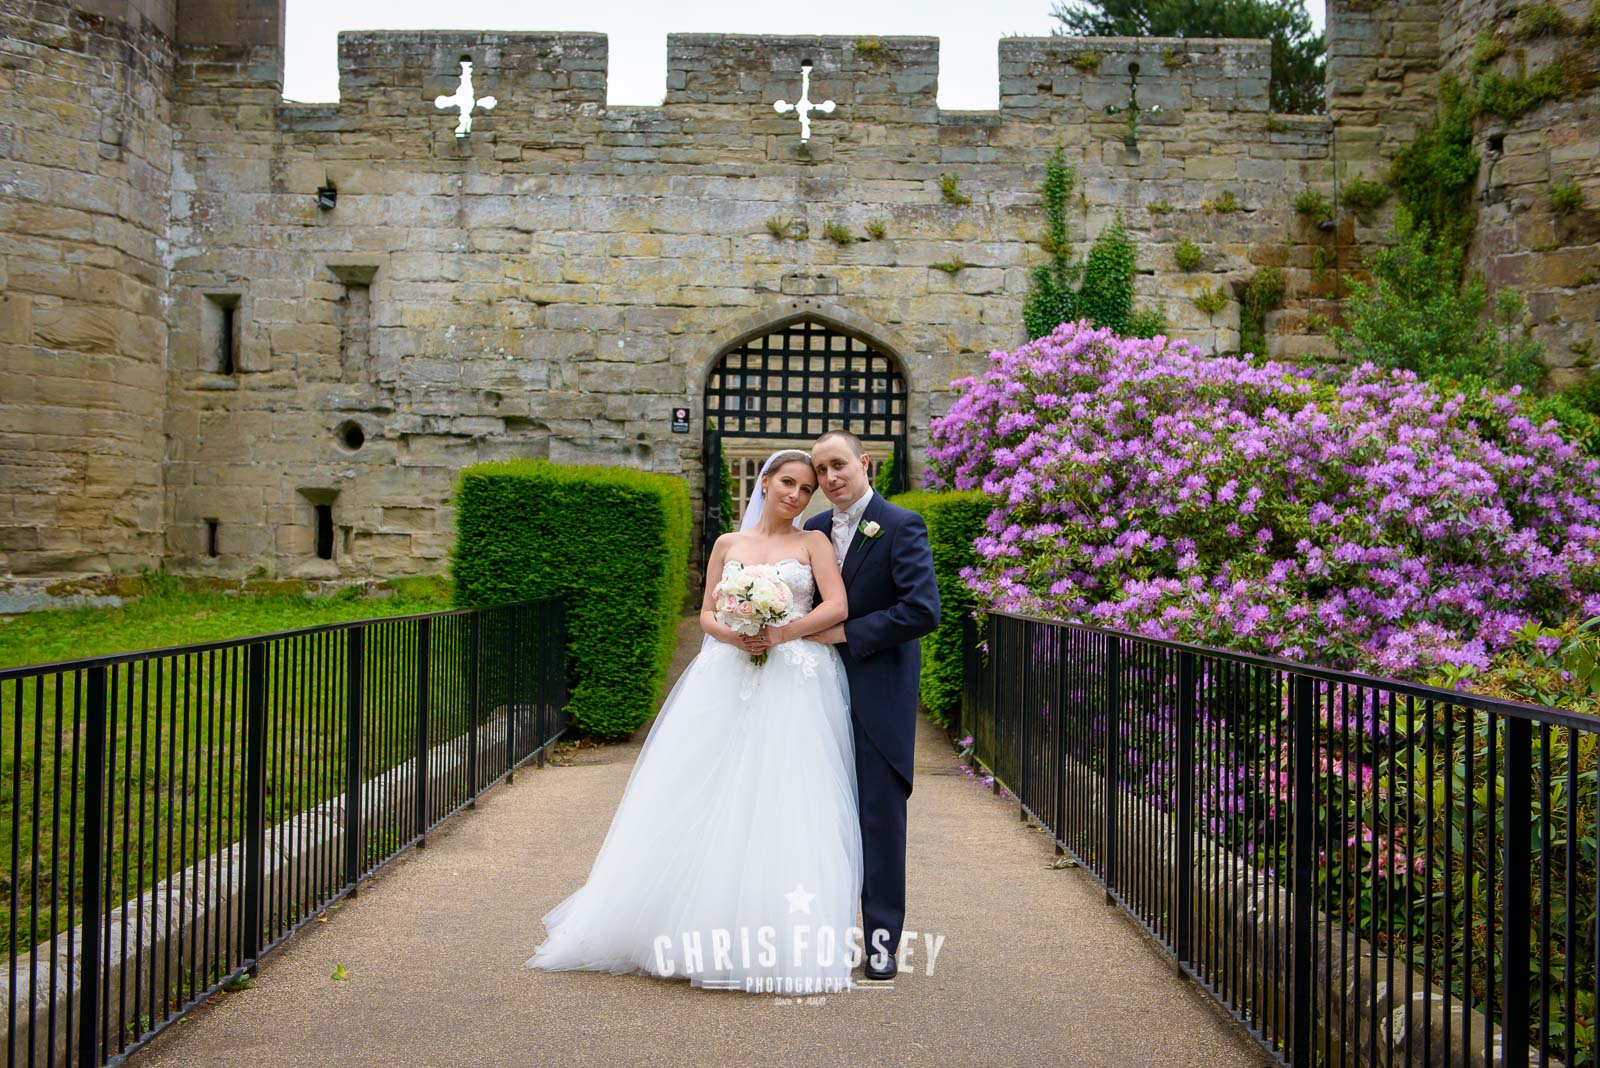 Warwick Castle Wedding Photography Warwickshire Wedding Photos by Chris Fossey Photography